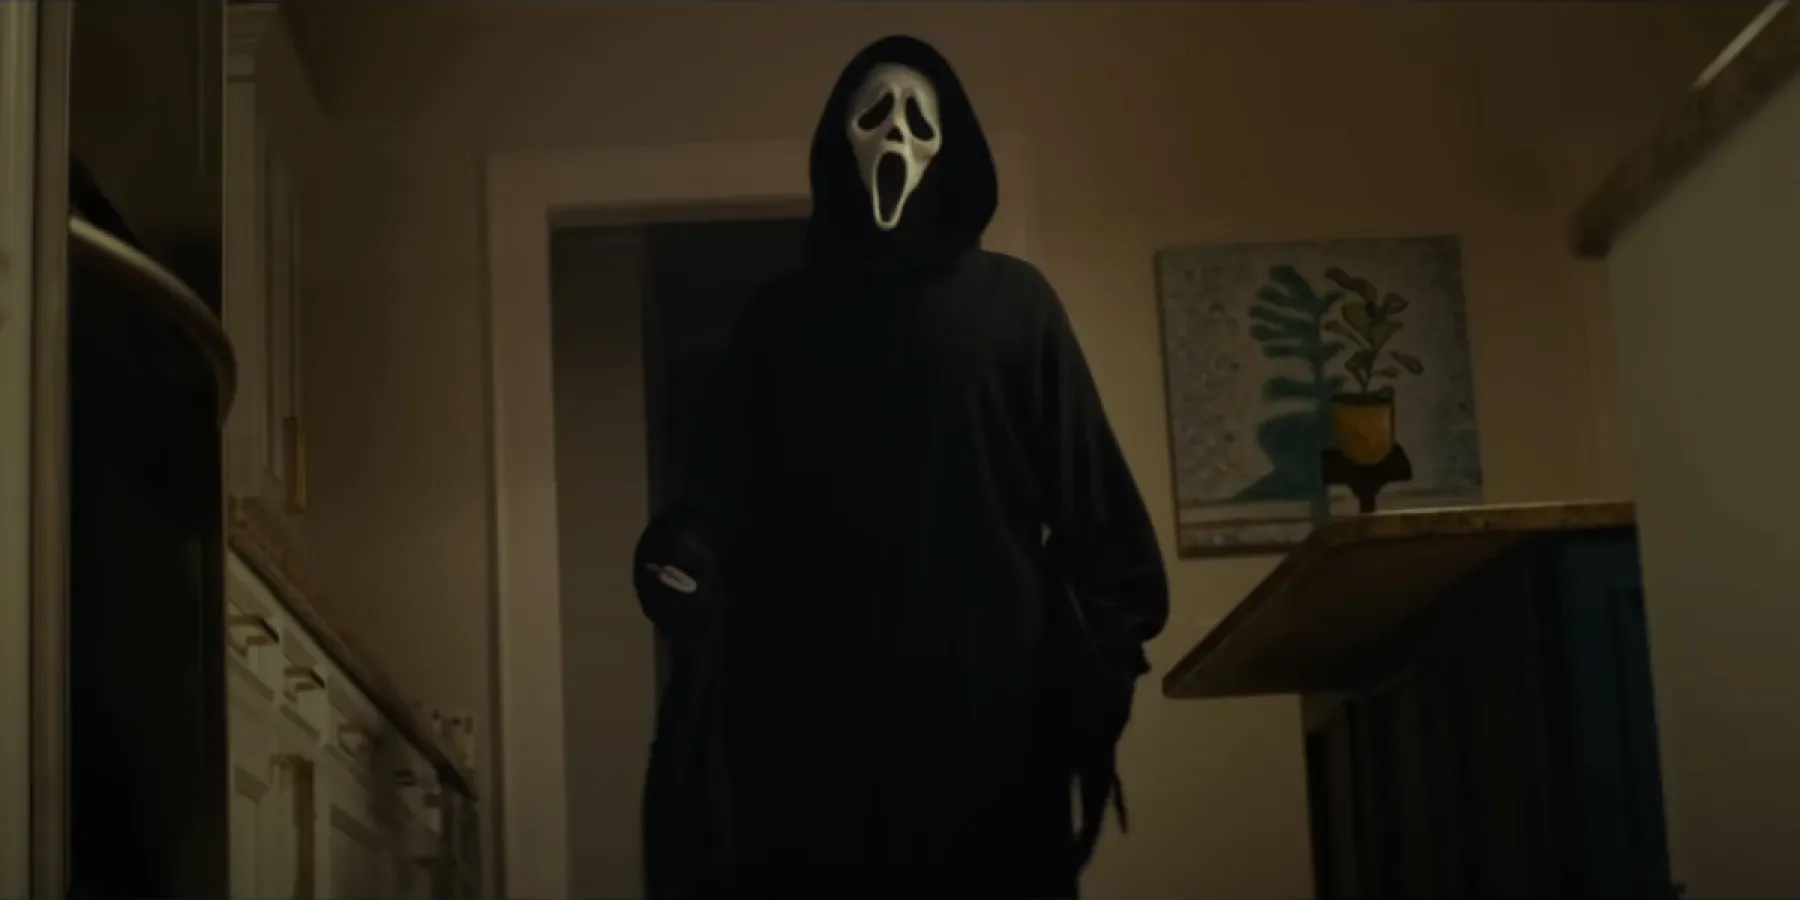 Ghostface in 2022's Scream